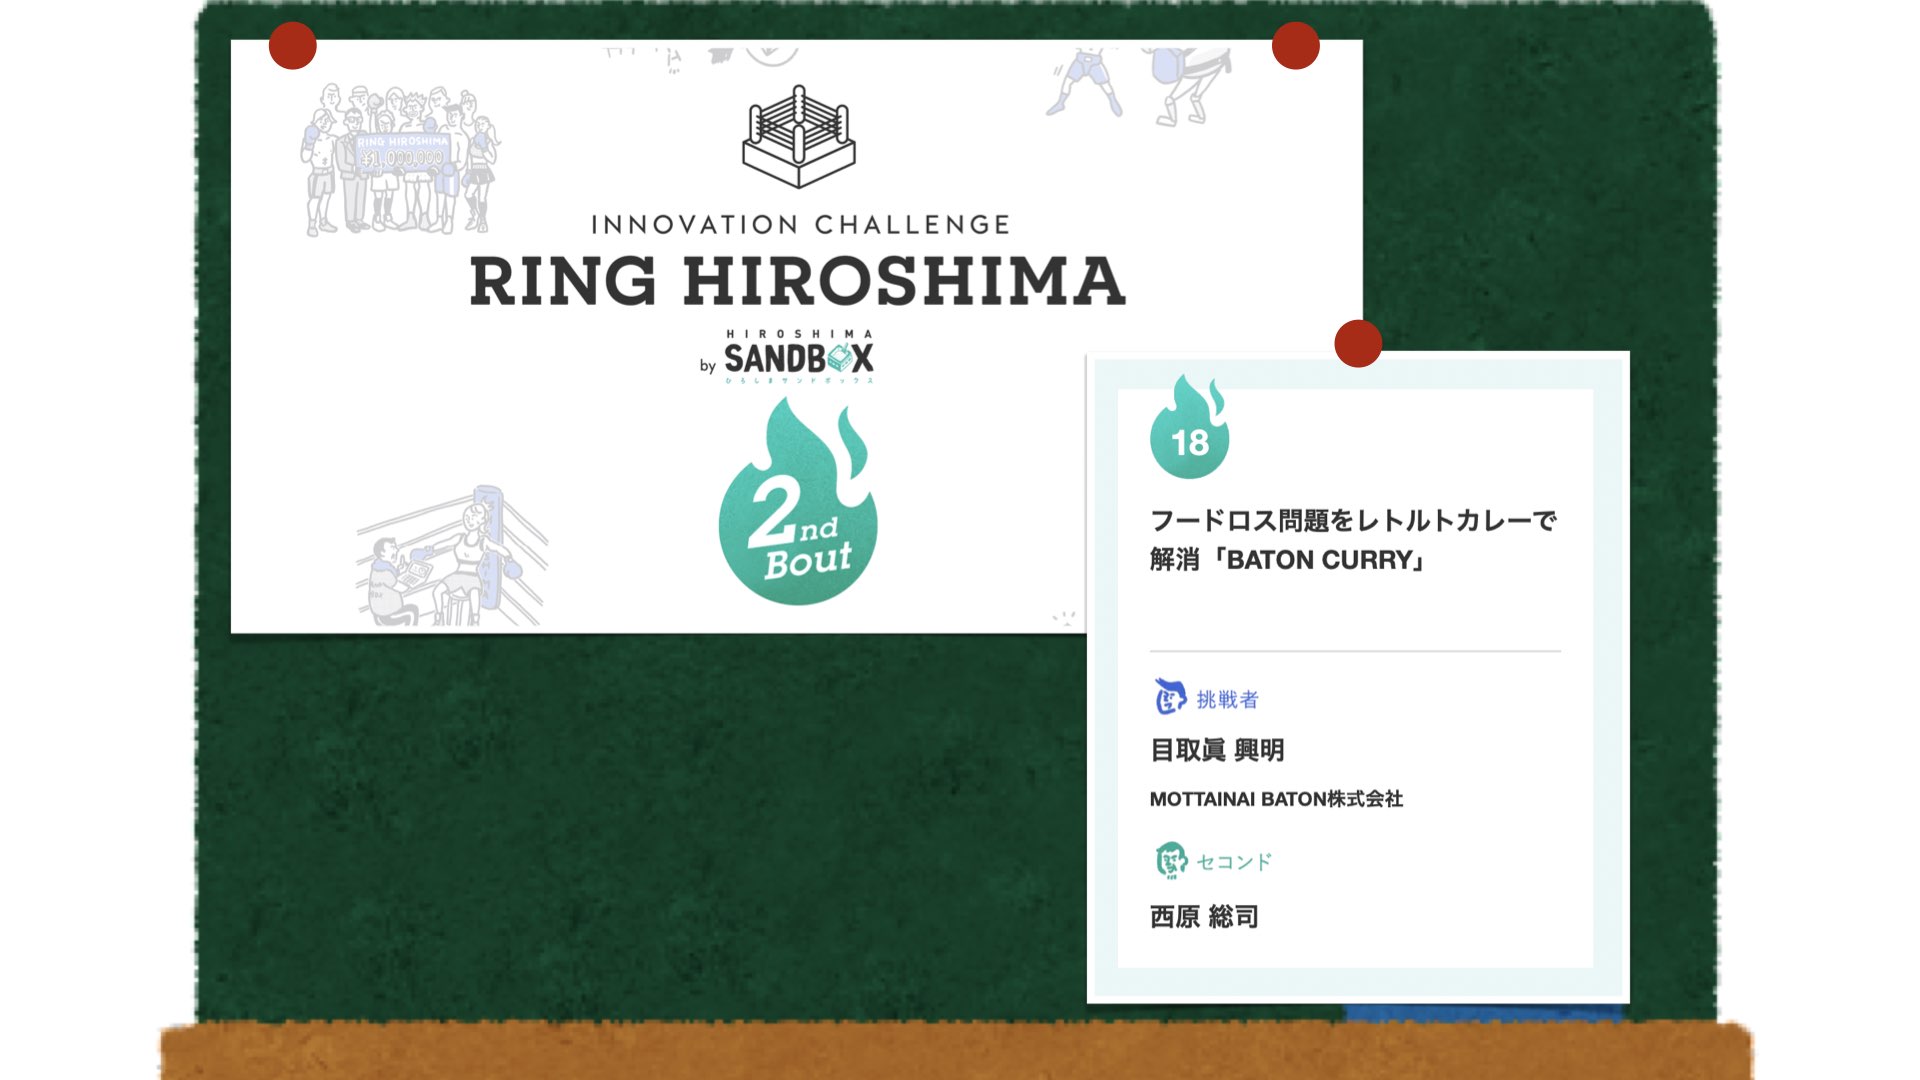 【目取眞先生】ひろしまサンドボックスが運営する「RING HIROSHIMA」に採択されました